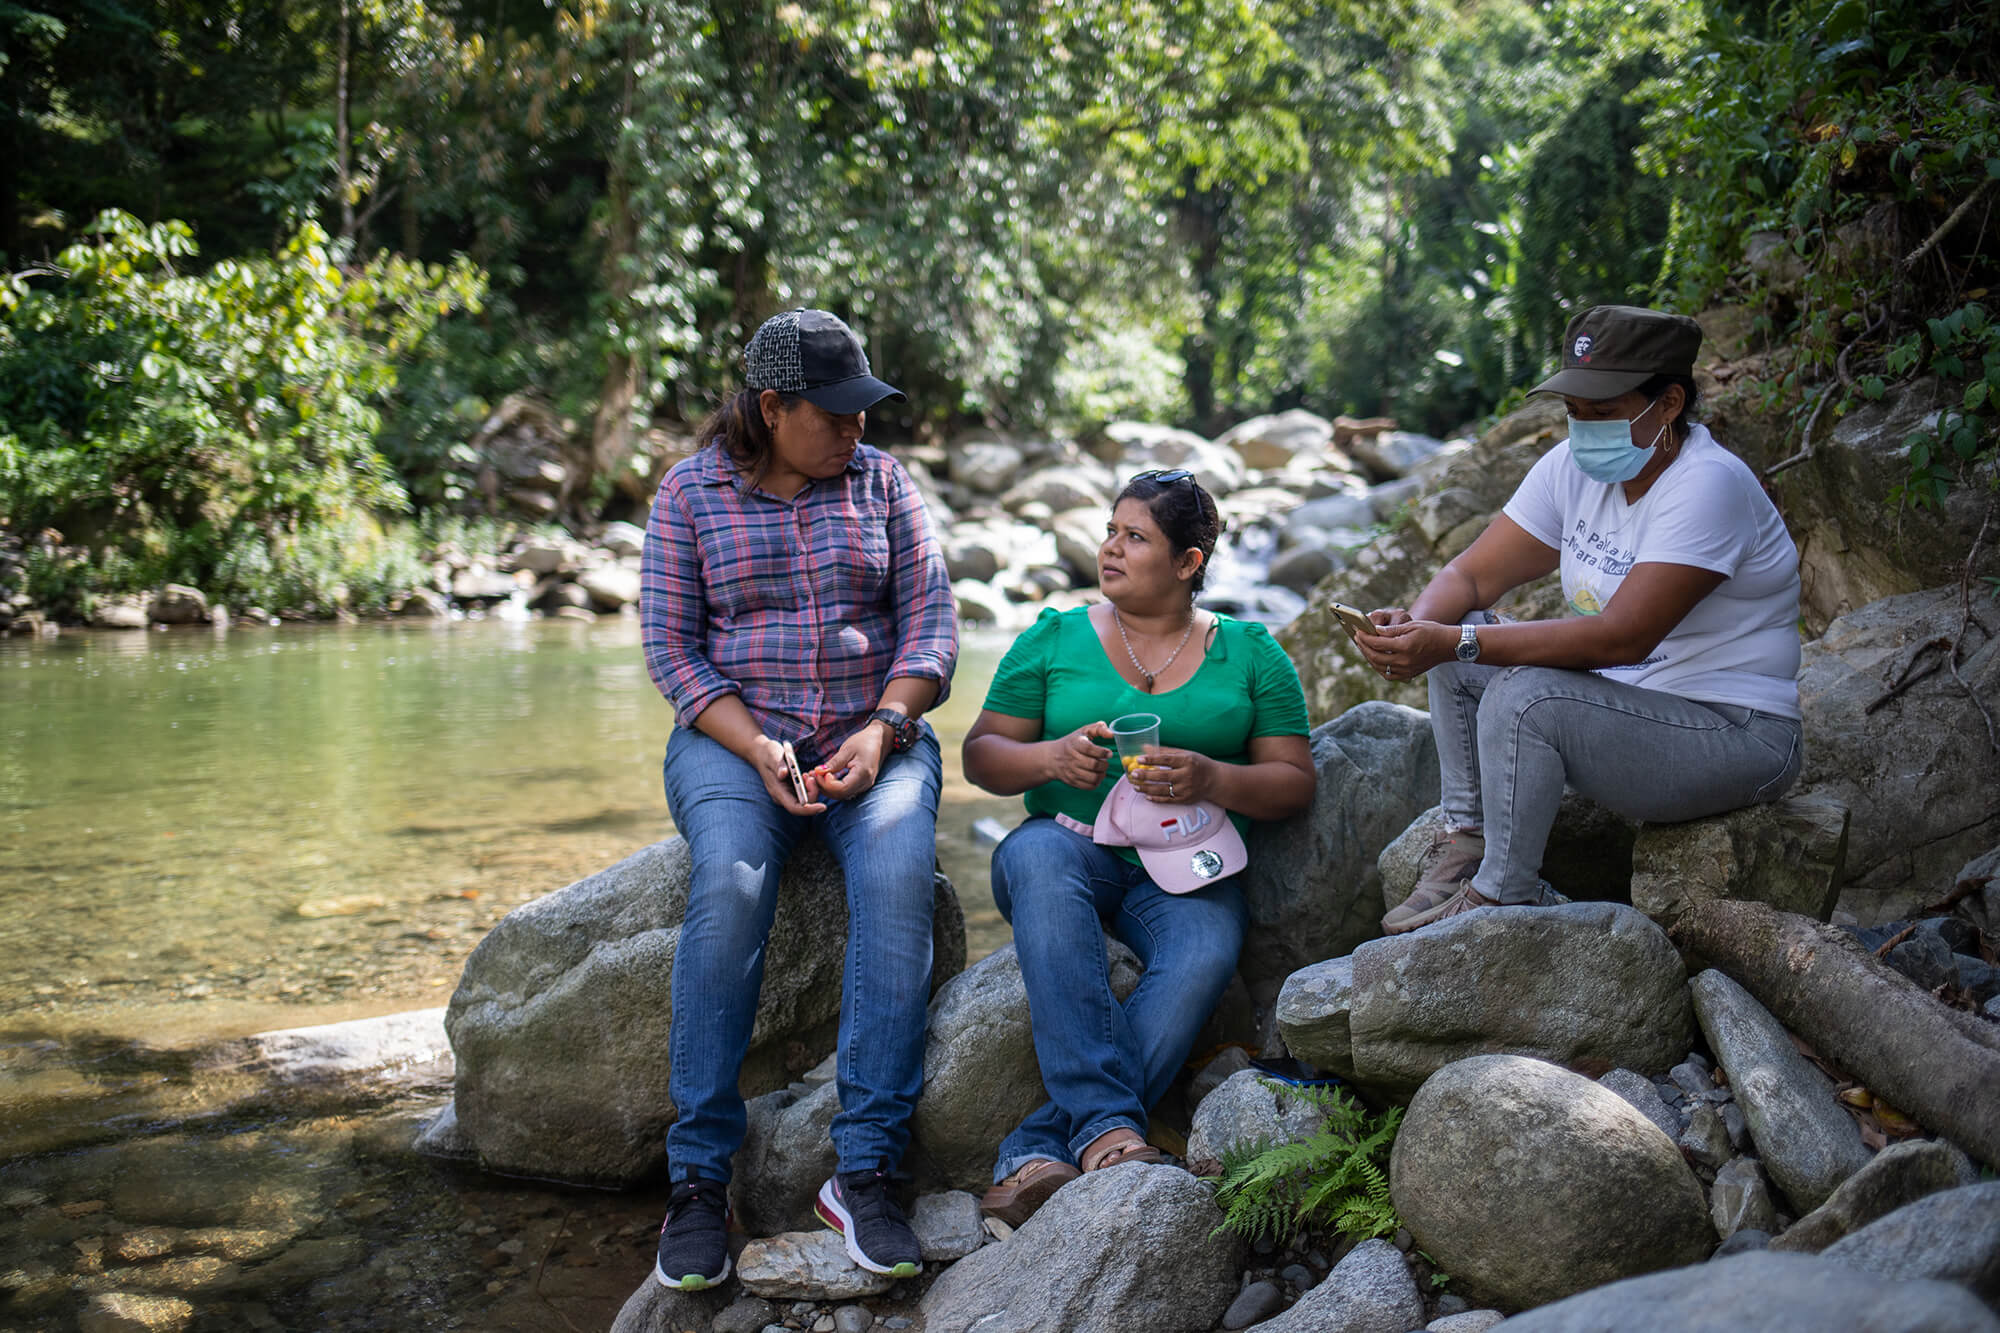 Jilamito Honduras | termas | hidroelectrica | Río Jilamito, | loadge | hydroelectric project | dfc | hydropower | bid invest| idb | proyecto